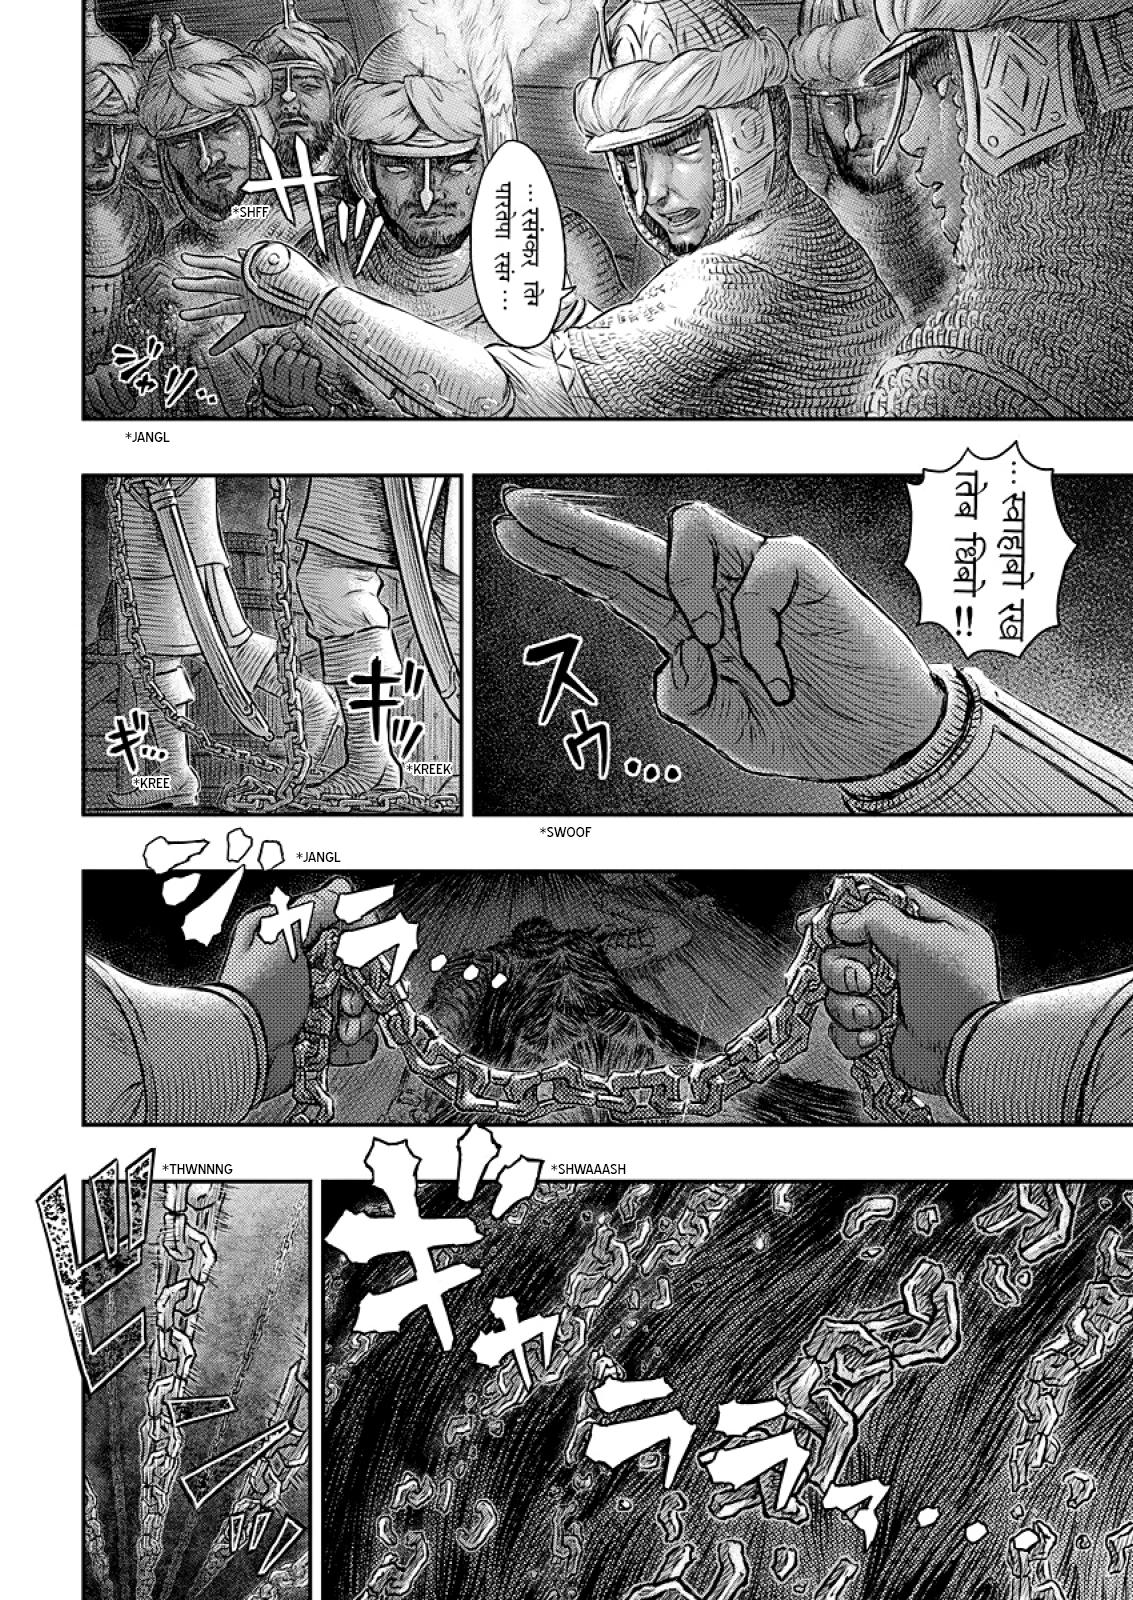 Berserk Manga Chapter 374 image 17